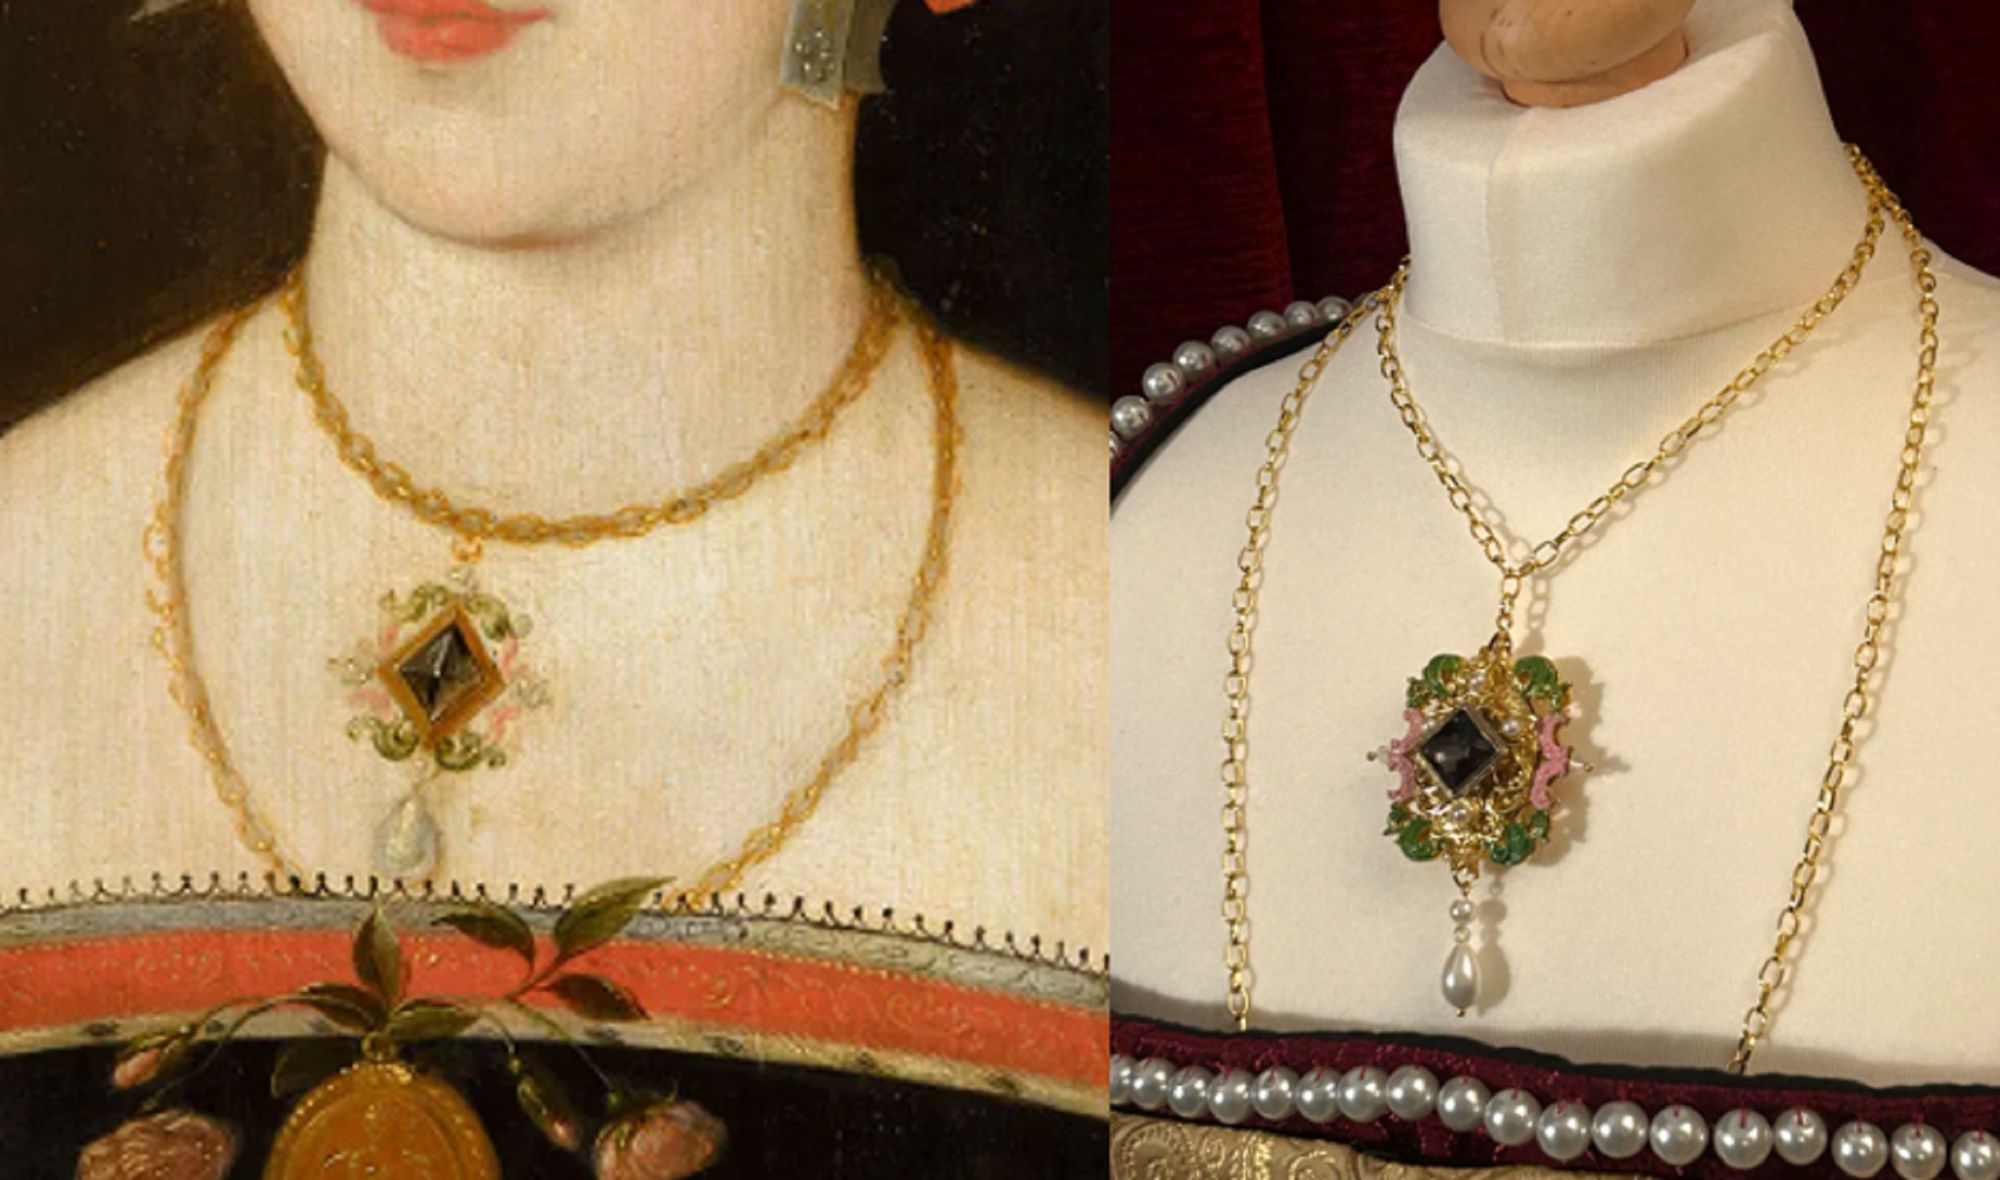 Mary Boleyn Hever portrait replica leaf design compare.jpg